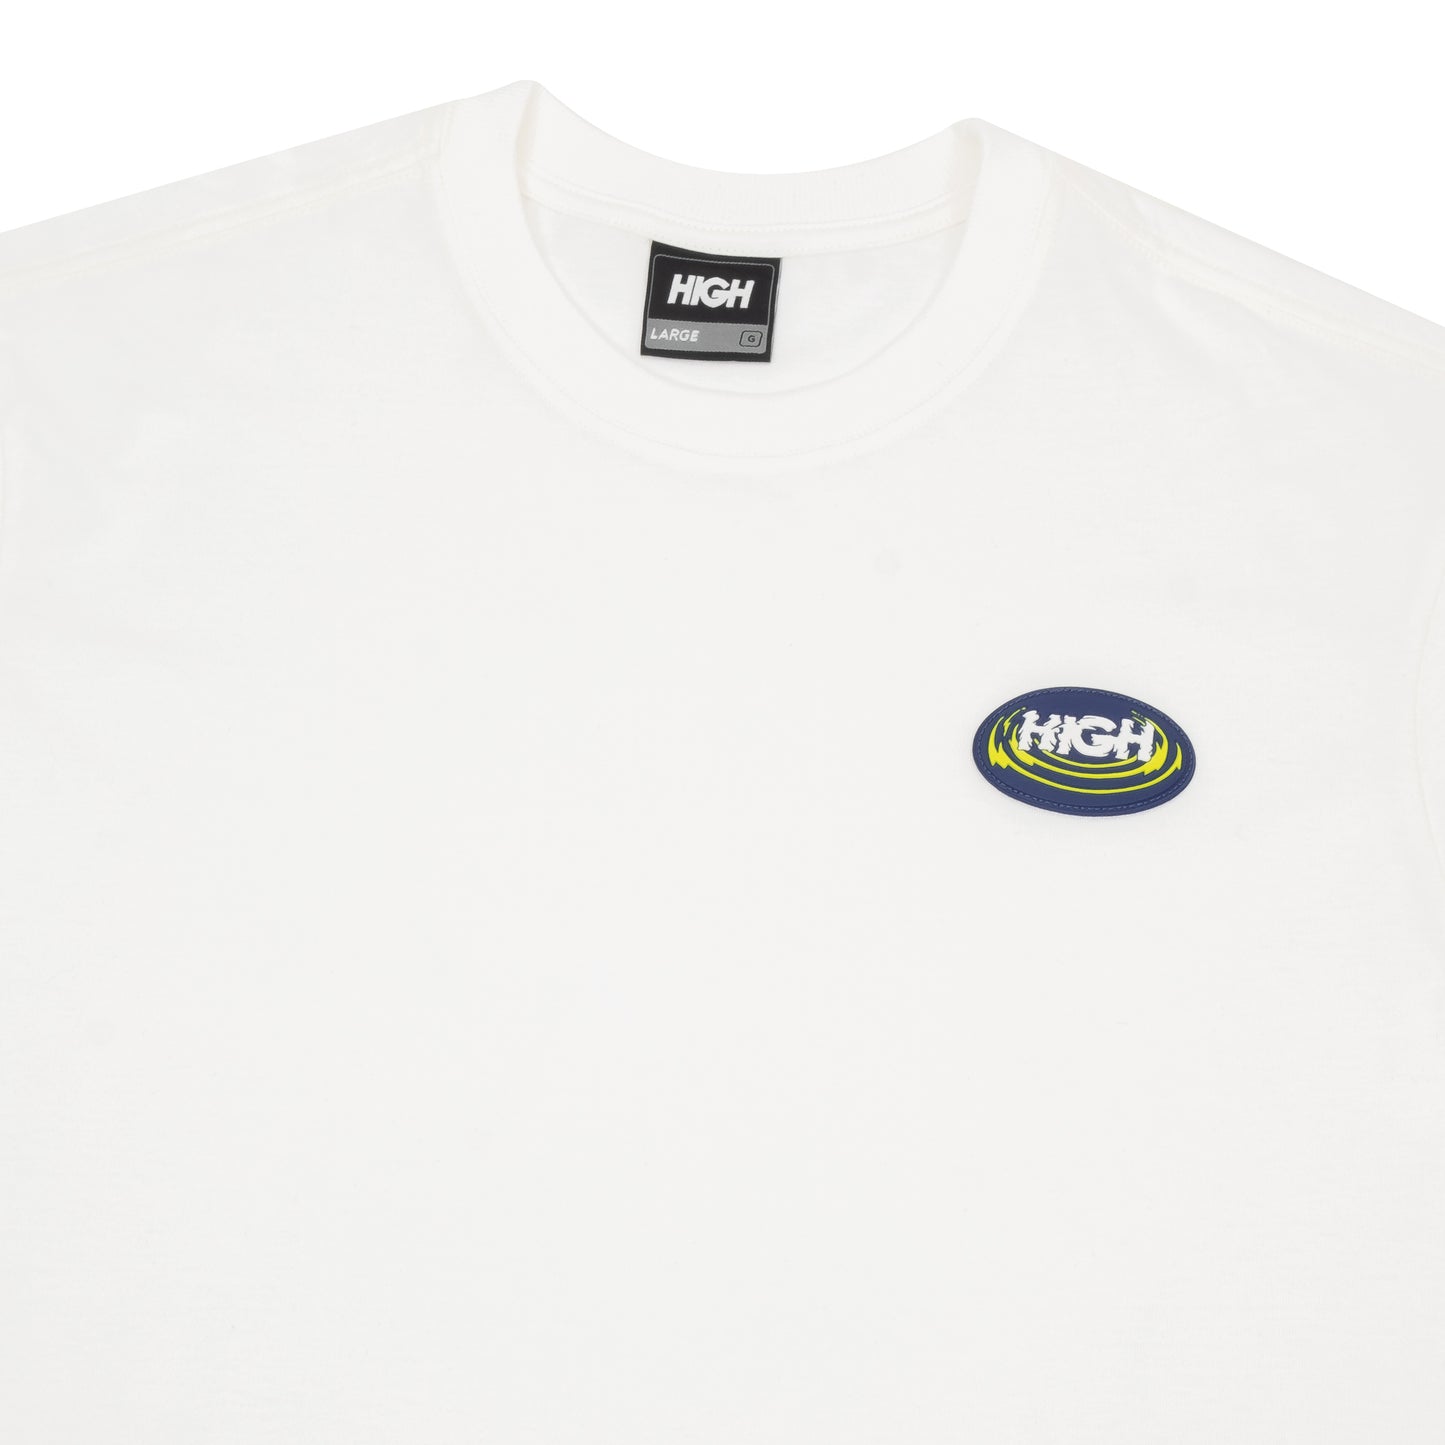 HIGH - Camiseta Hypnosis White